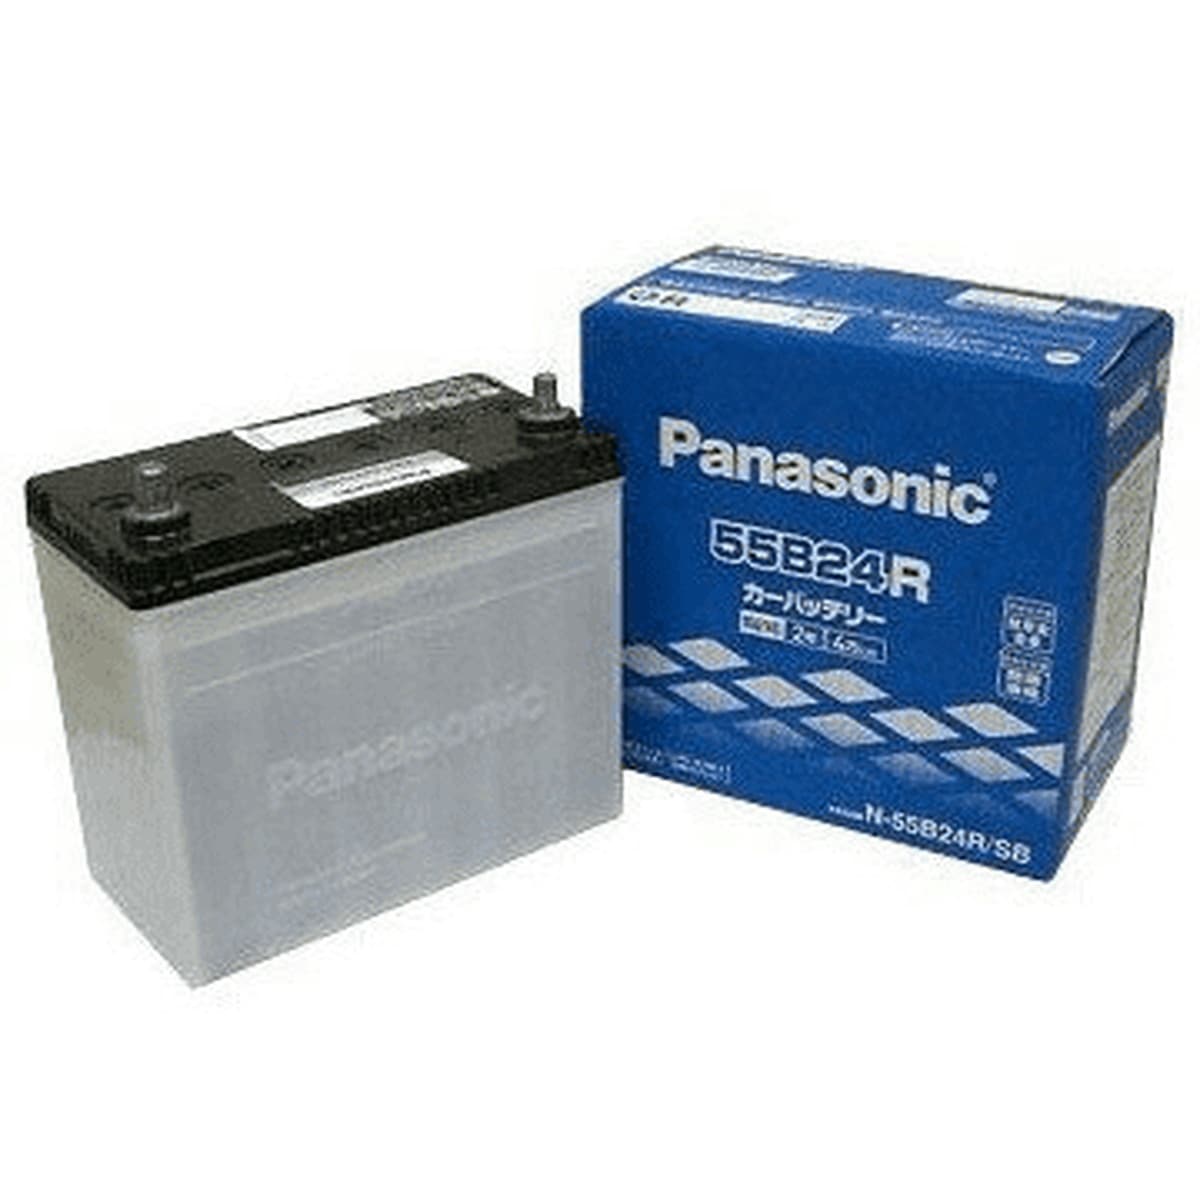 Panasonic N-60B19L/C8 ニッサン キックス 搭載(42B19L) PANASONIC カオス ブルーバッテリー 送料無料